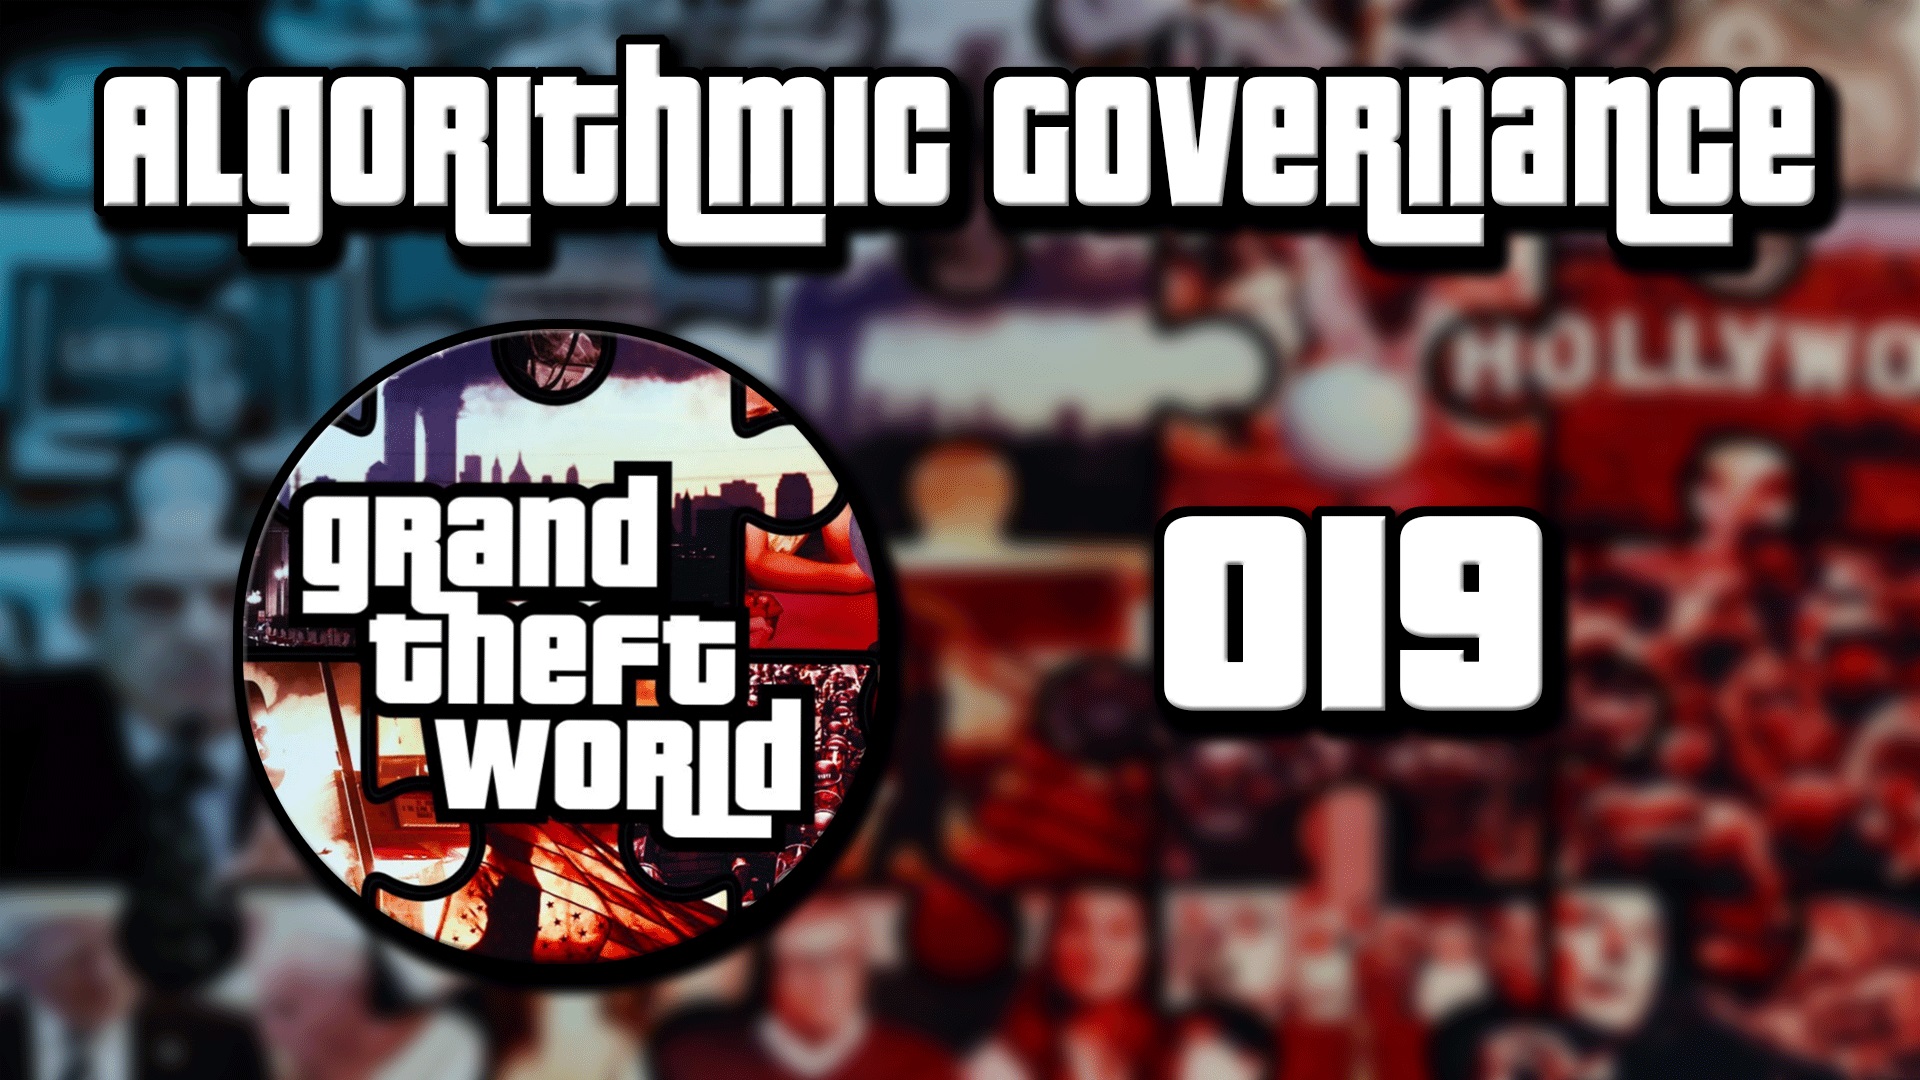 Grand Theft World Podcast 019 | Algorithmic Governance